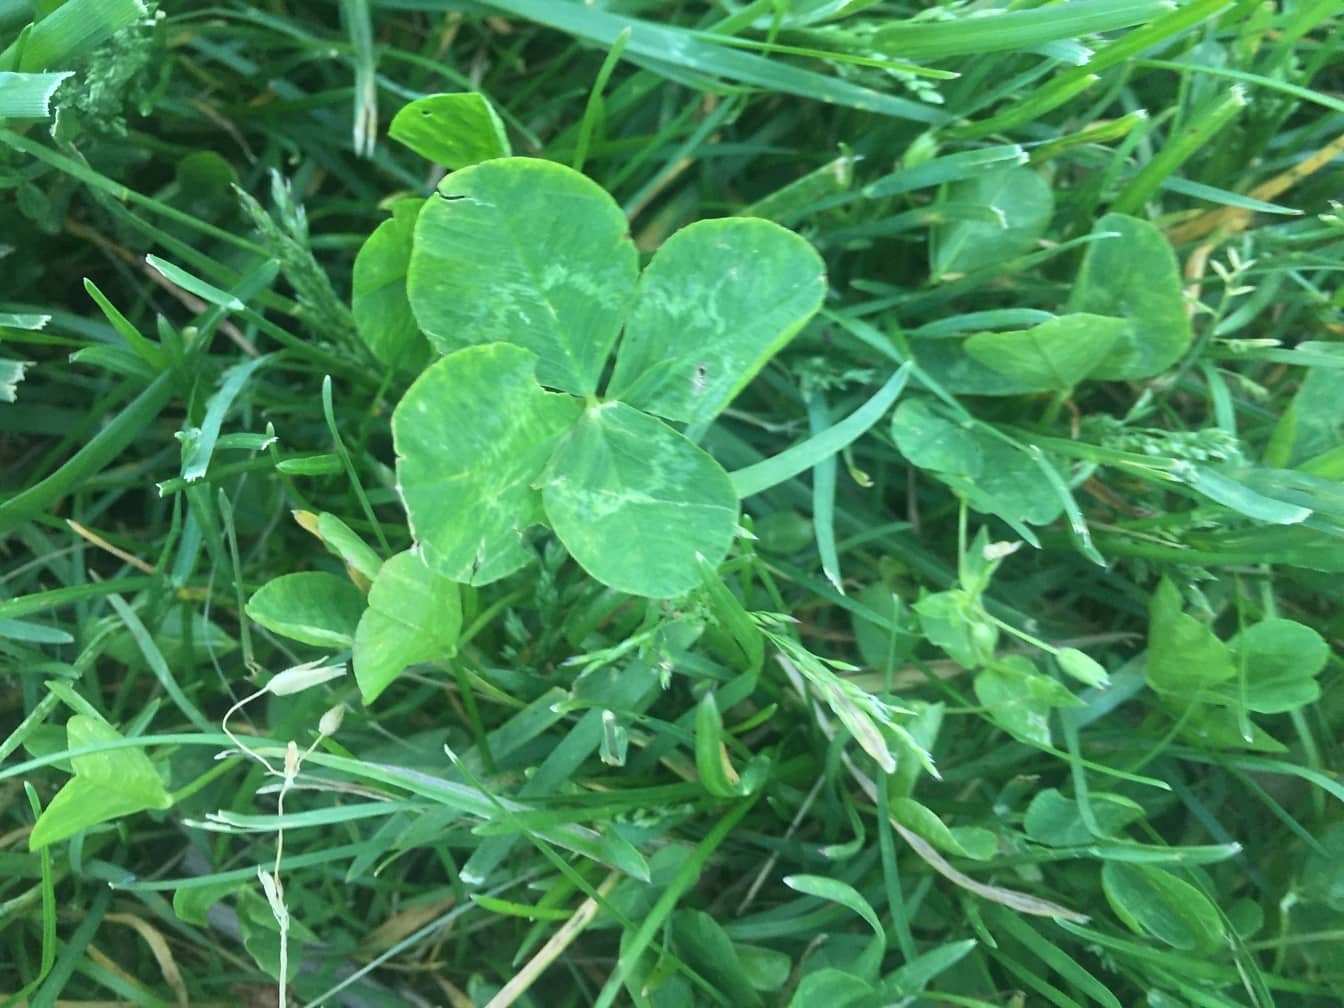 Trevo de quatro folhas encontrado na grama ou gramado